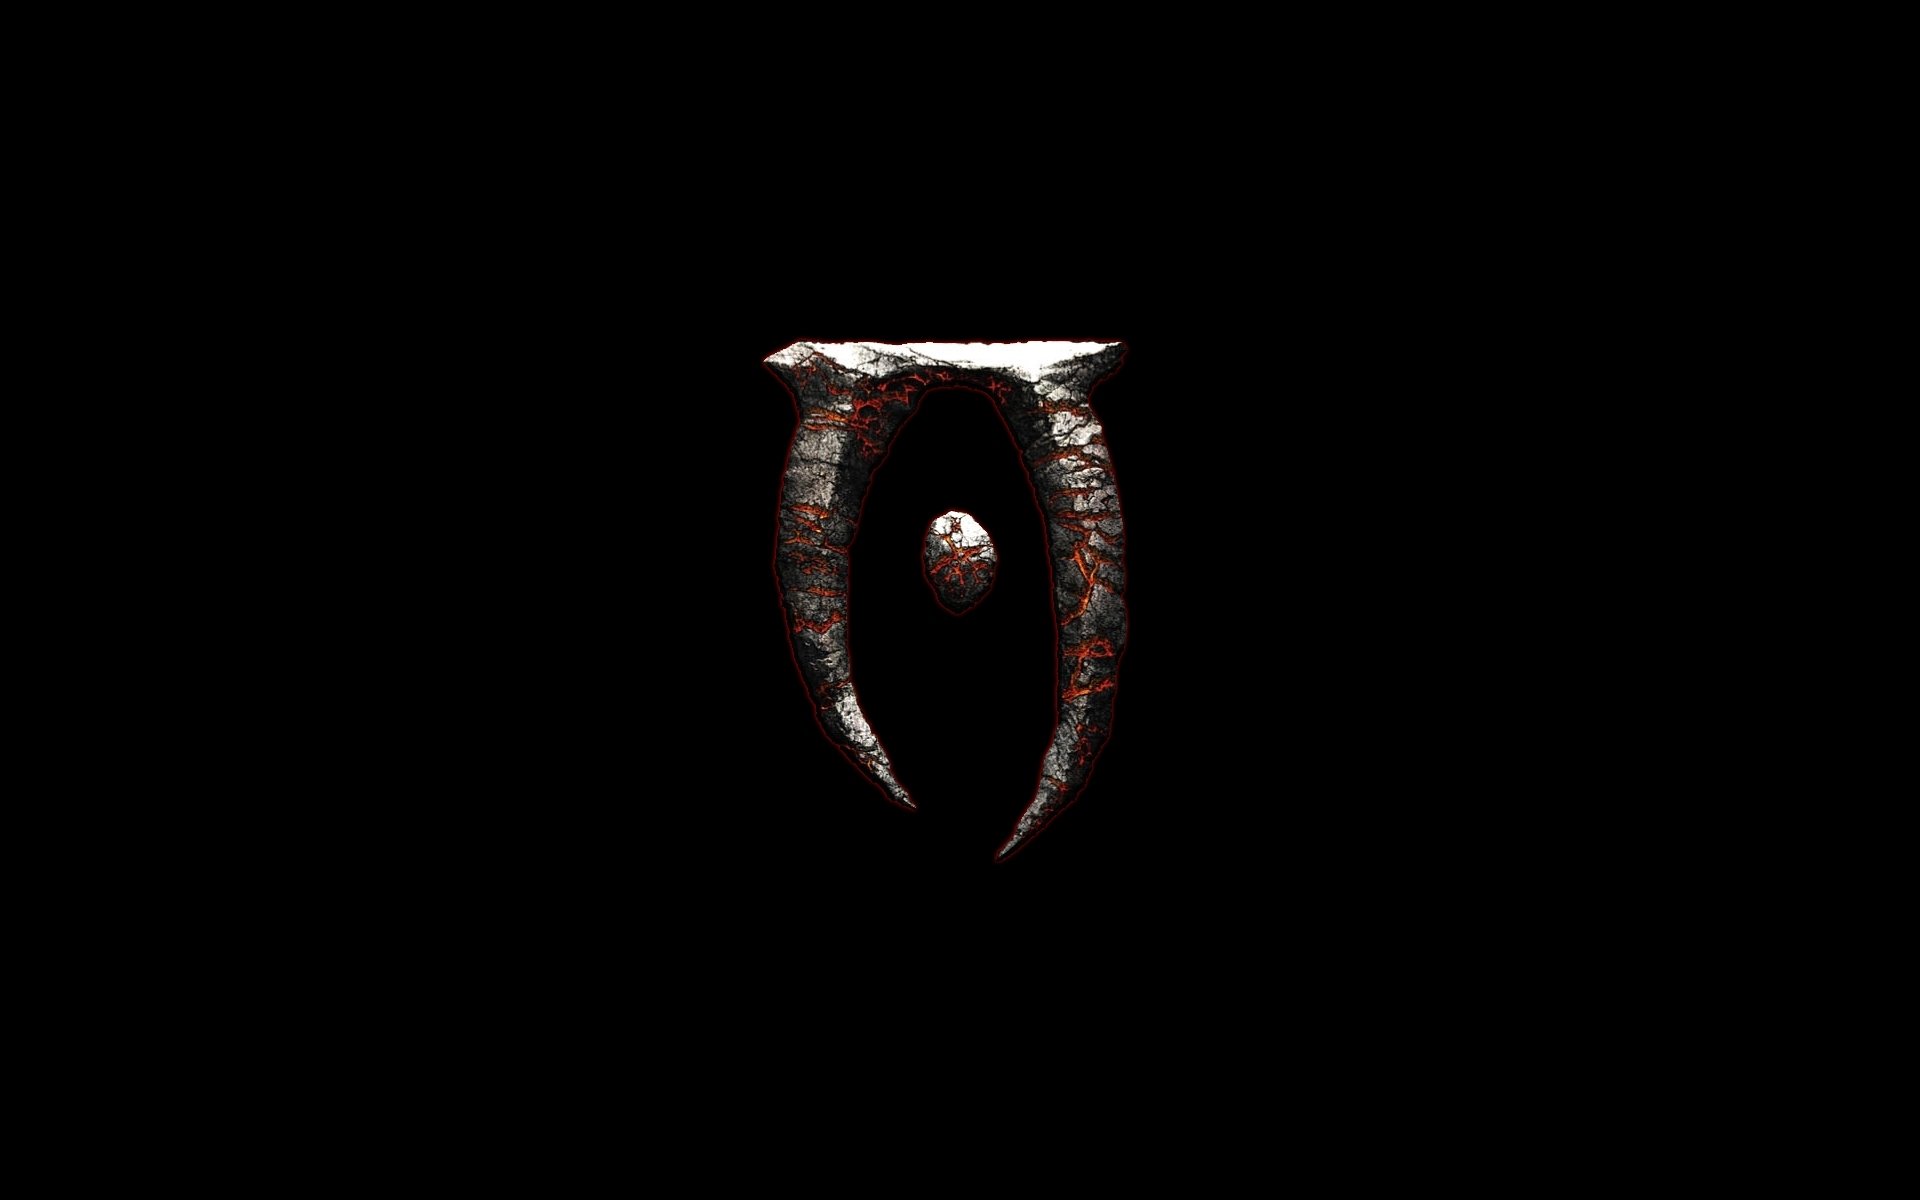 The Elder Scrolls IV: Oblivion HD Wallpaper and Background Image